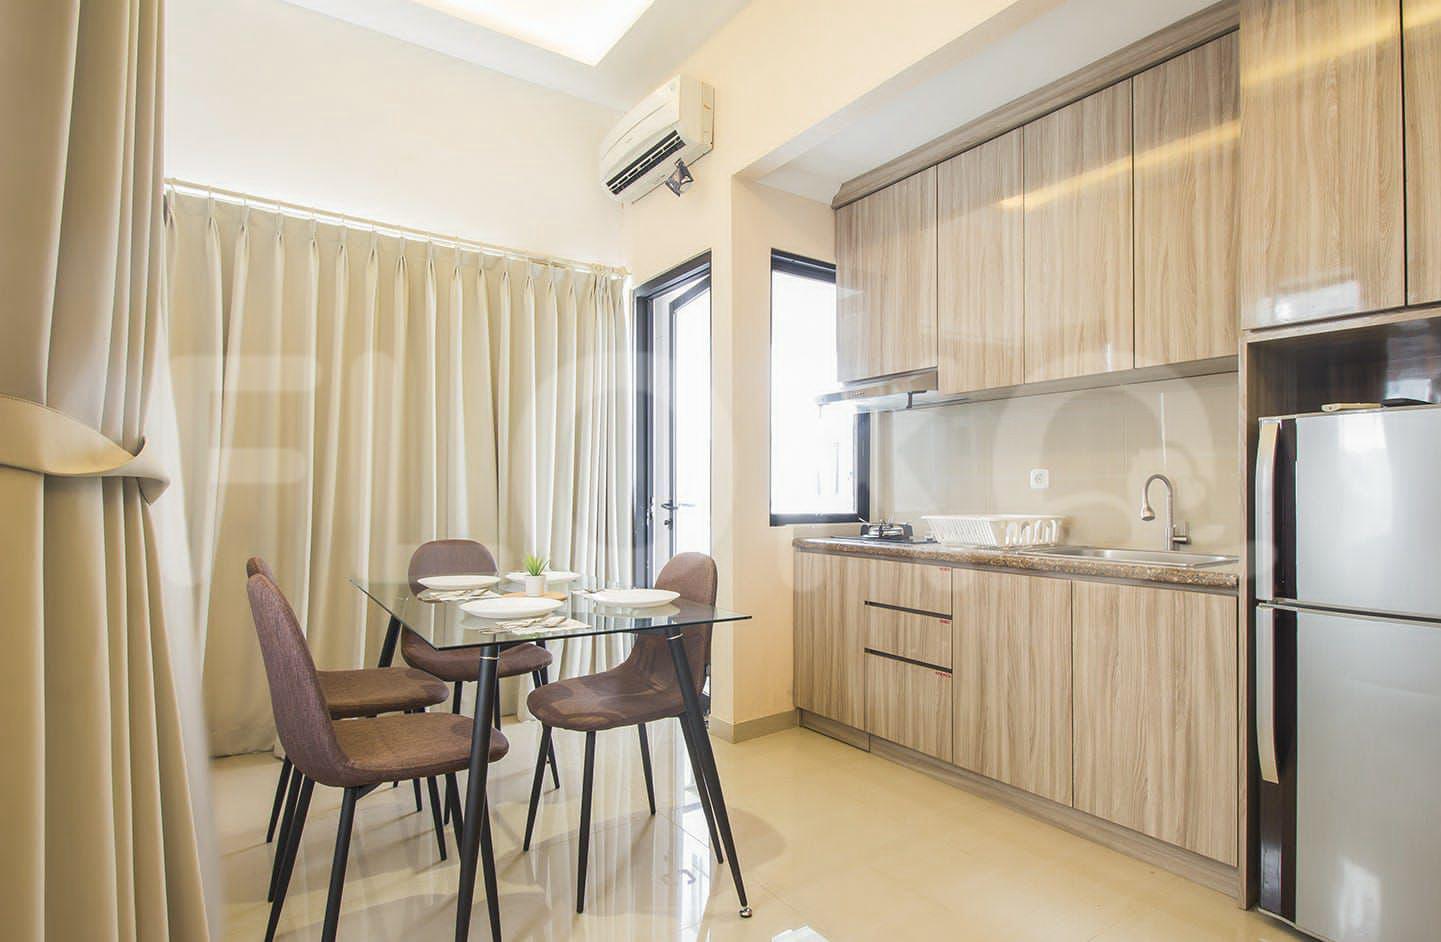 Sewa Apartemen Sudirman Park Apartemen Tipe 3 Kamar Tidur di Lantai 38 ftadc3